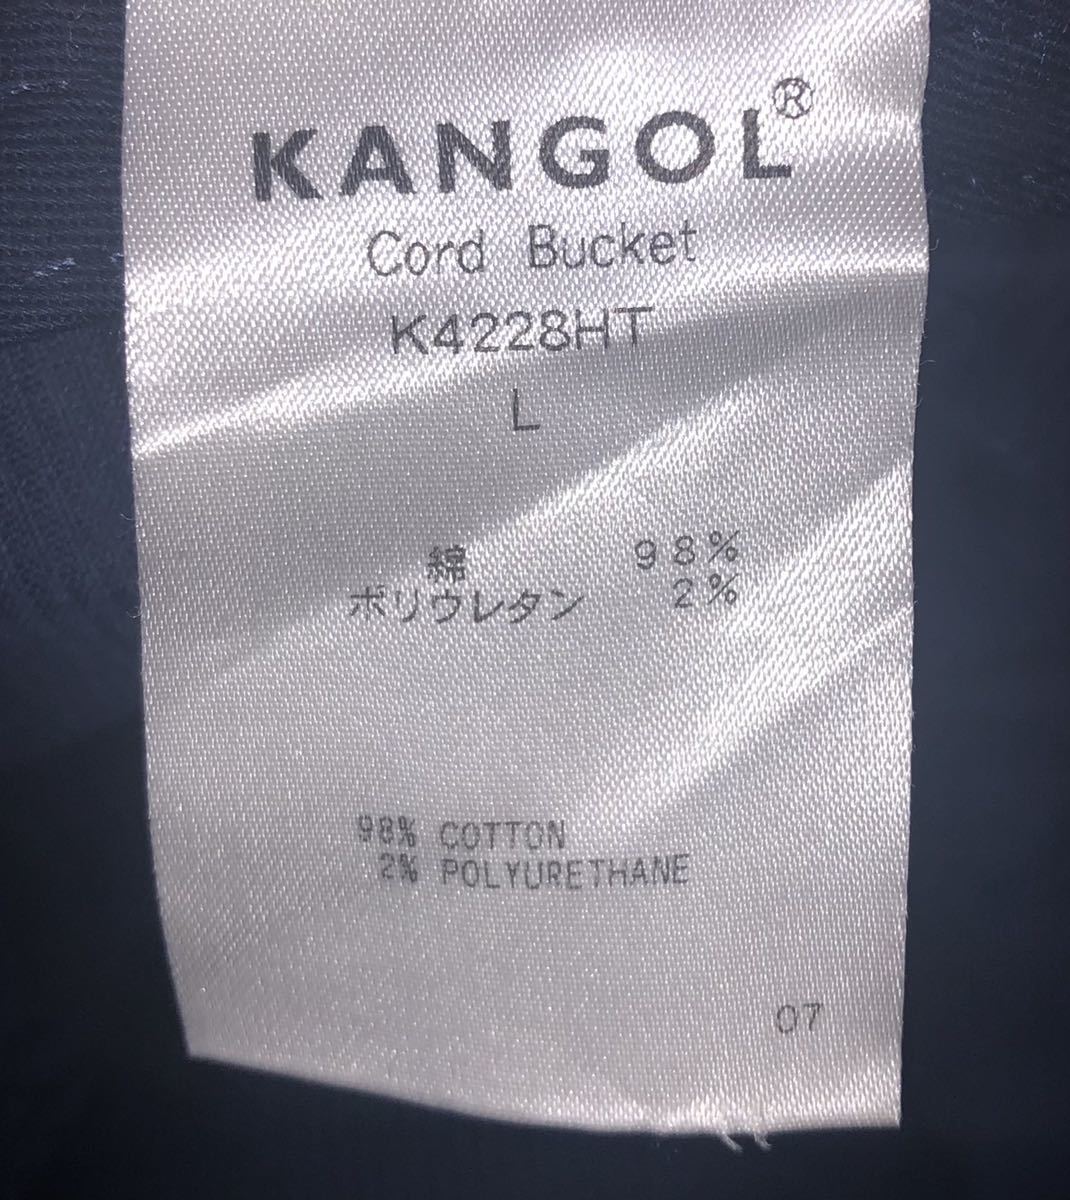  прекрасный товар KANGOL Cord Bucket K4228HT L Kangol код ковш вельвет панама темно-синий темно-синий me Toro шляпа для мужчин и женщин 